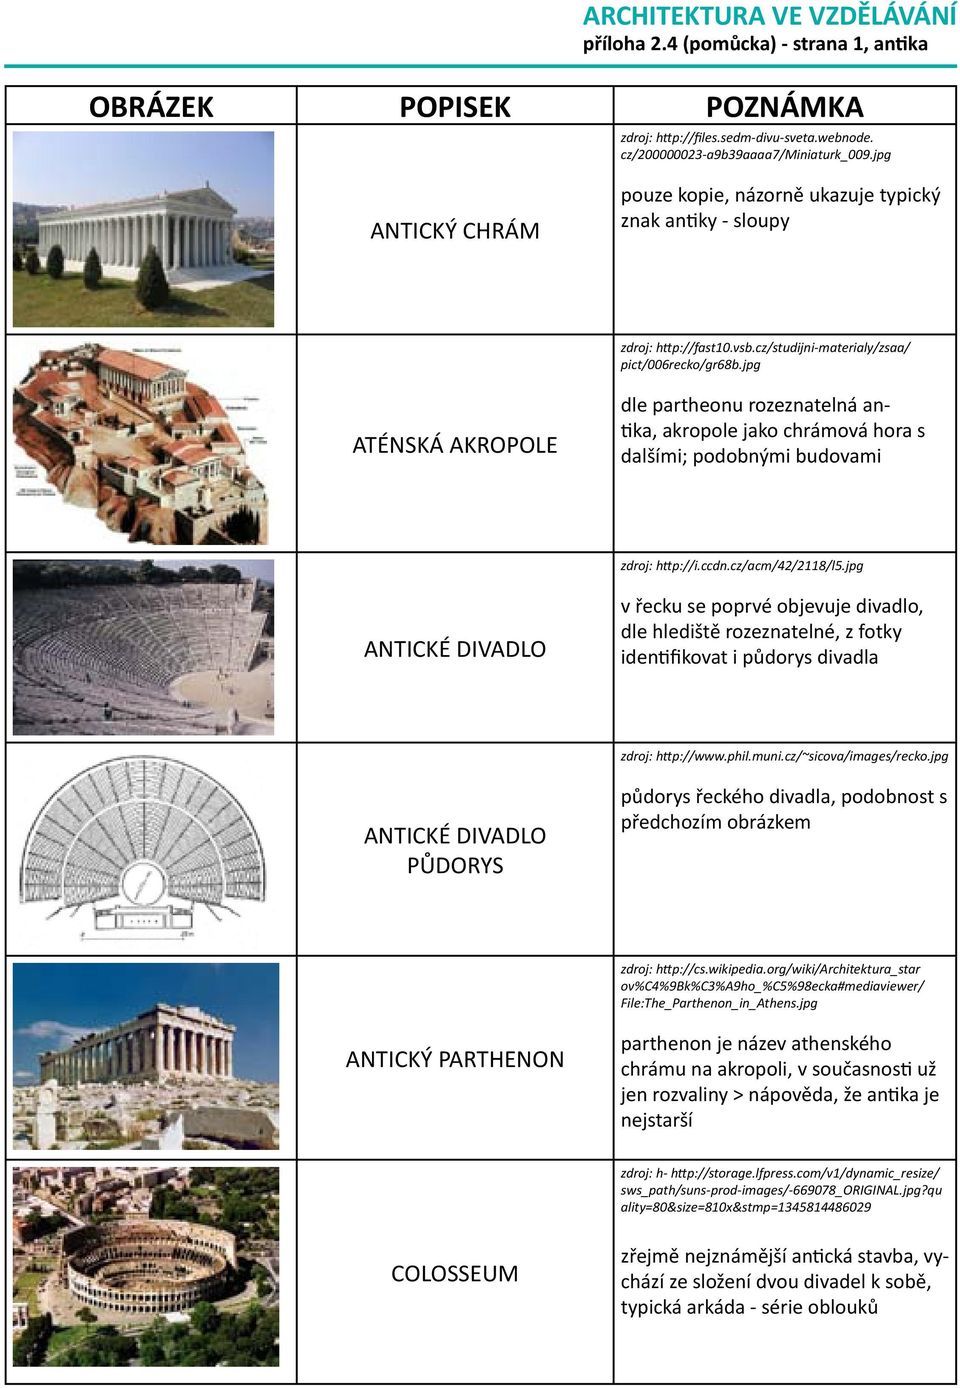 jpg ATÉNSKÁ AKROPOLE dle partheonu rozeznatelná antika, akropole jako chrámová hora s dalšími; podobnými budovami zdroj: http://i.ccdn.cz/acm/42/2118/l5.